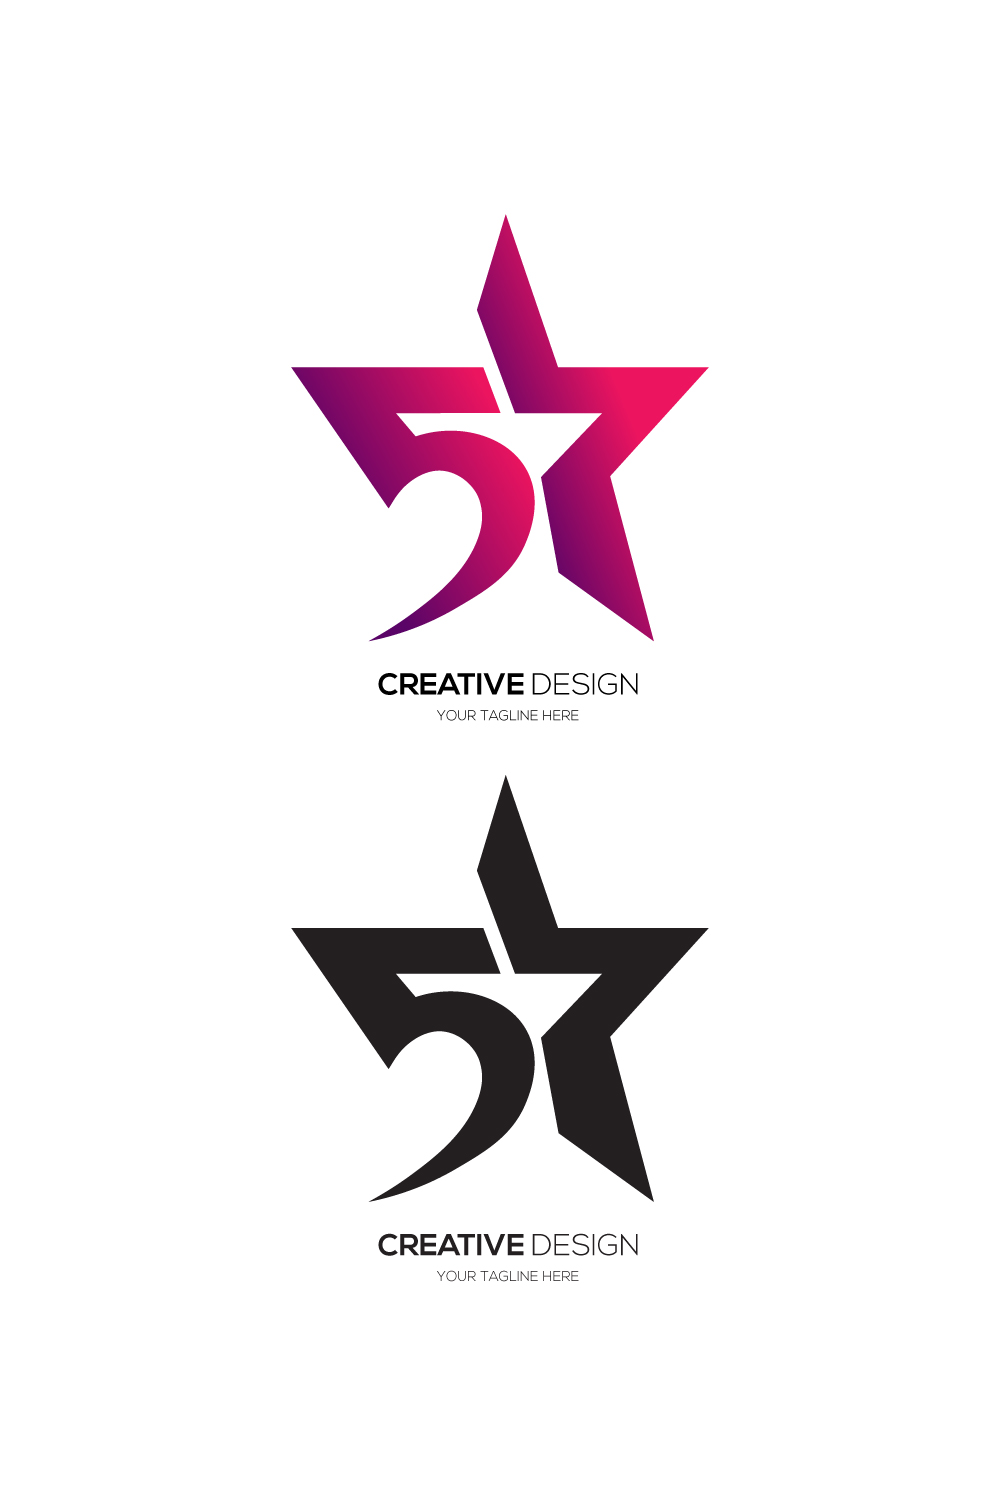 Modern letter 5-star imaginative shape logo pinterest preview image.